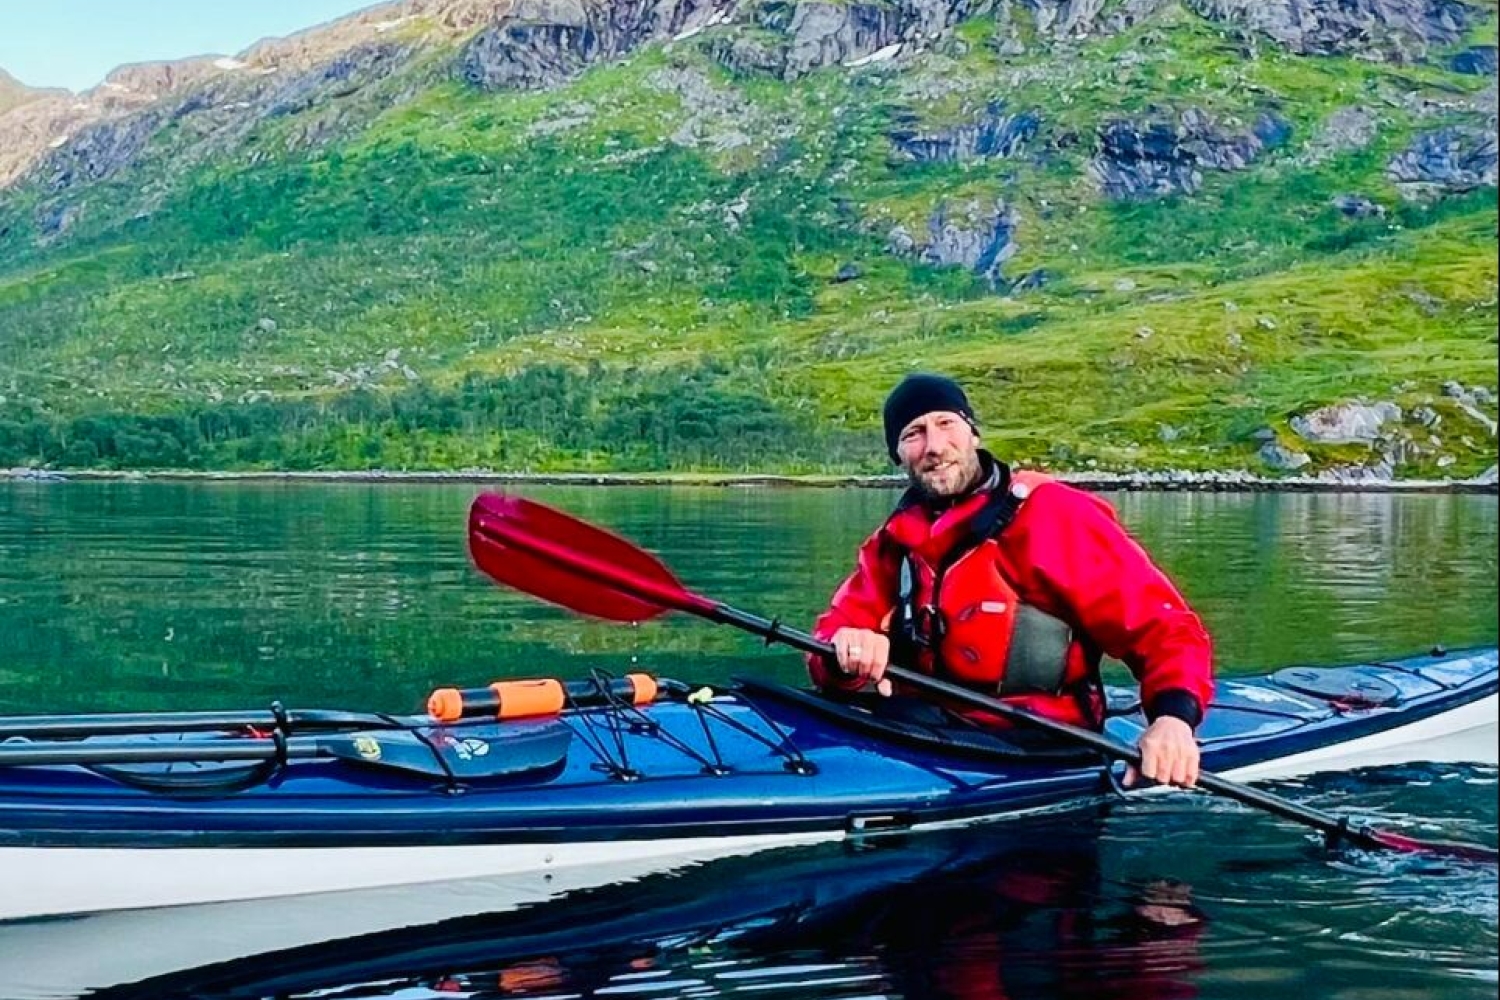 Guided sea kayaking tour